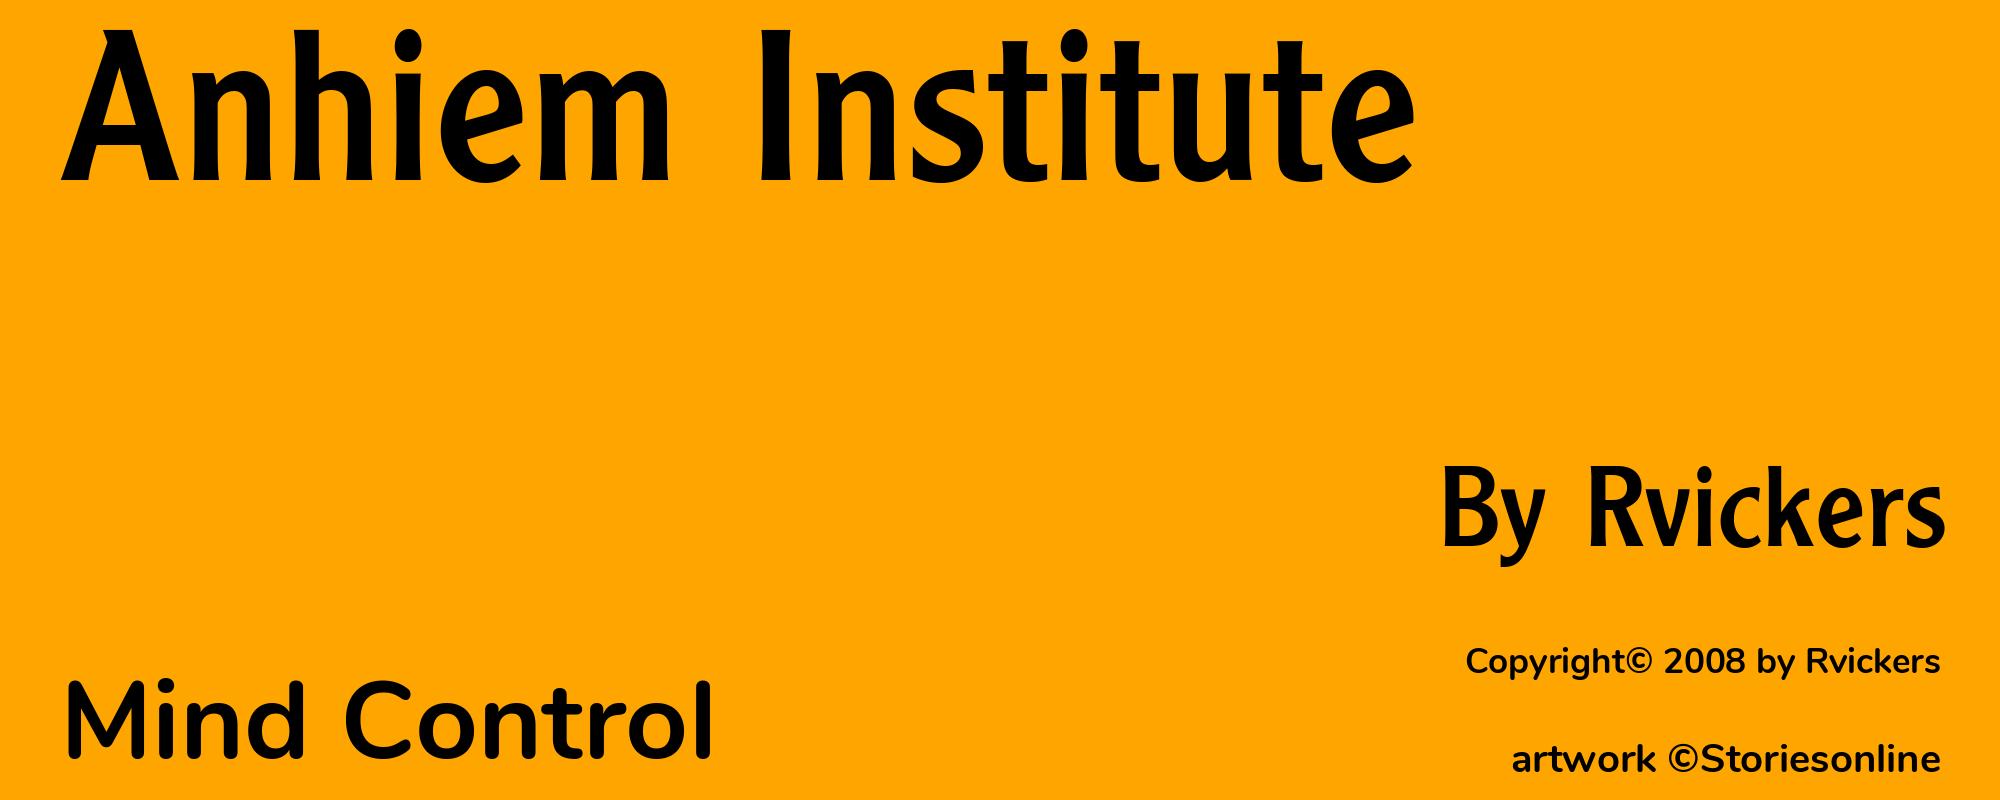 Anhiem Institute - Cover